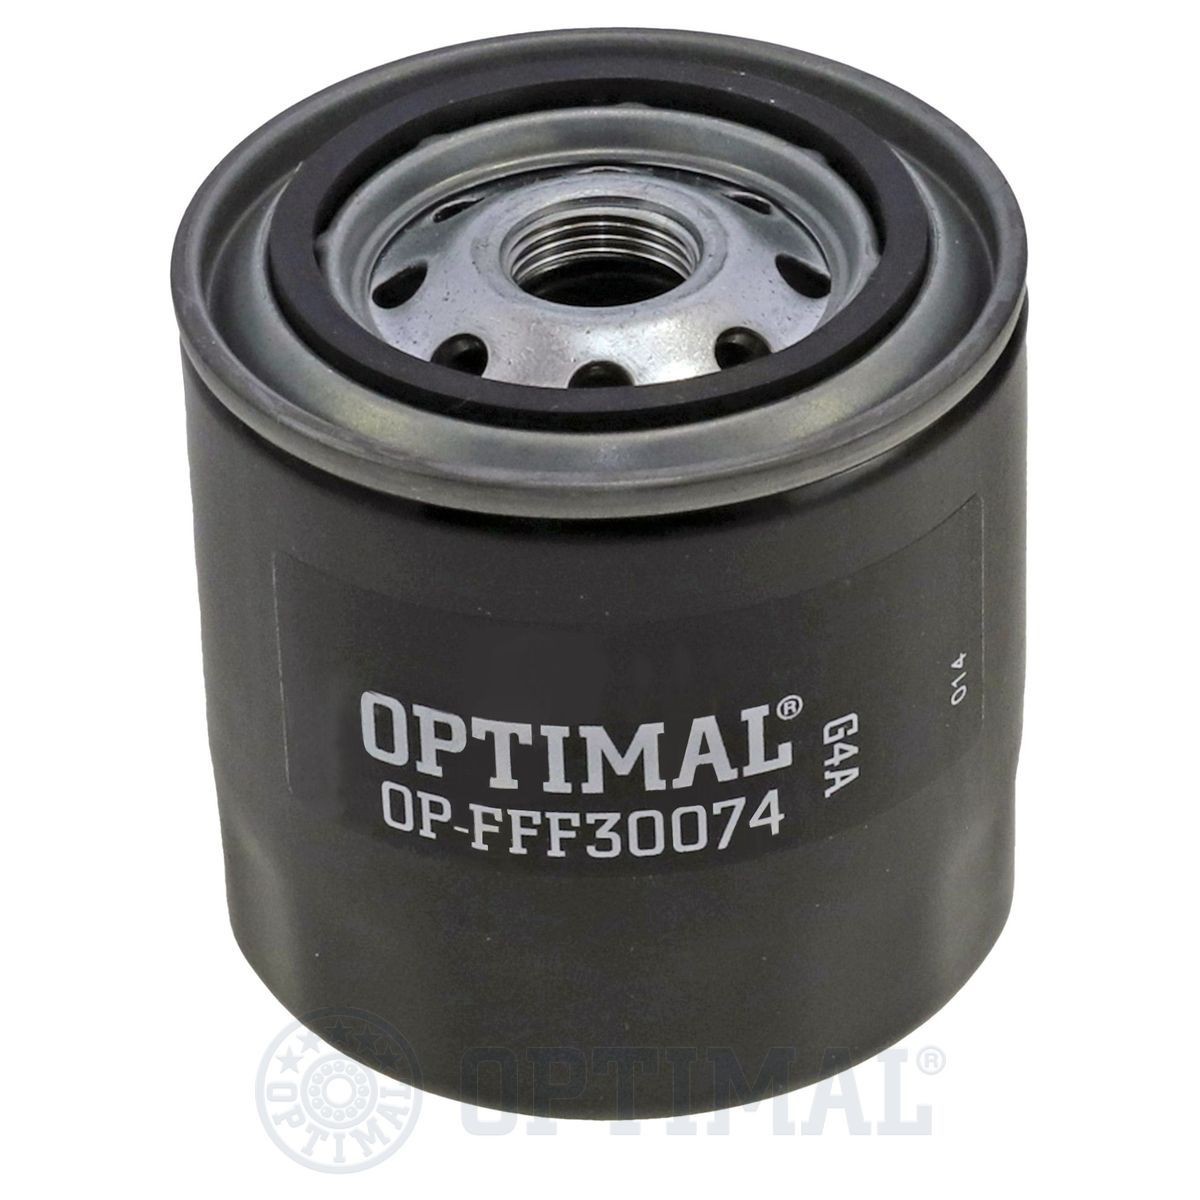 OPTIMAL OP-FFF30074 Fuel filter 23302 31960